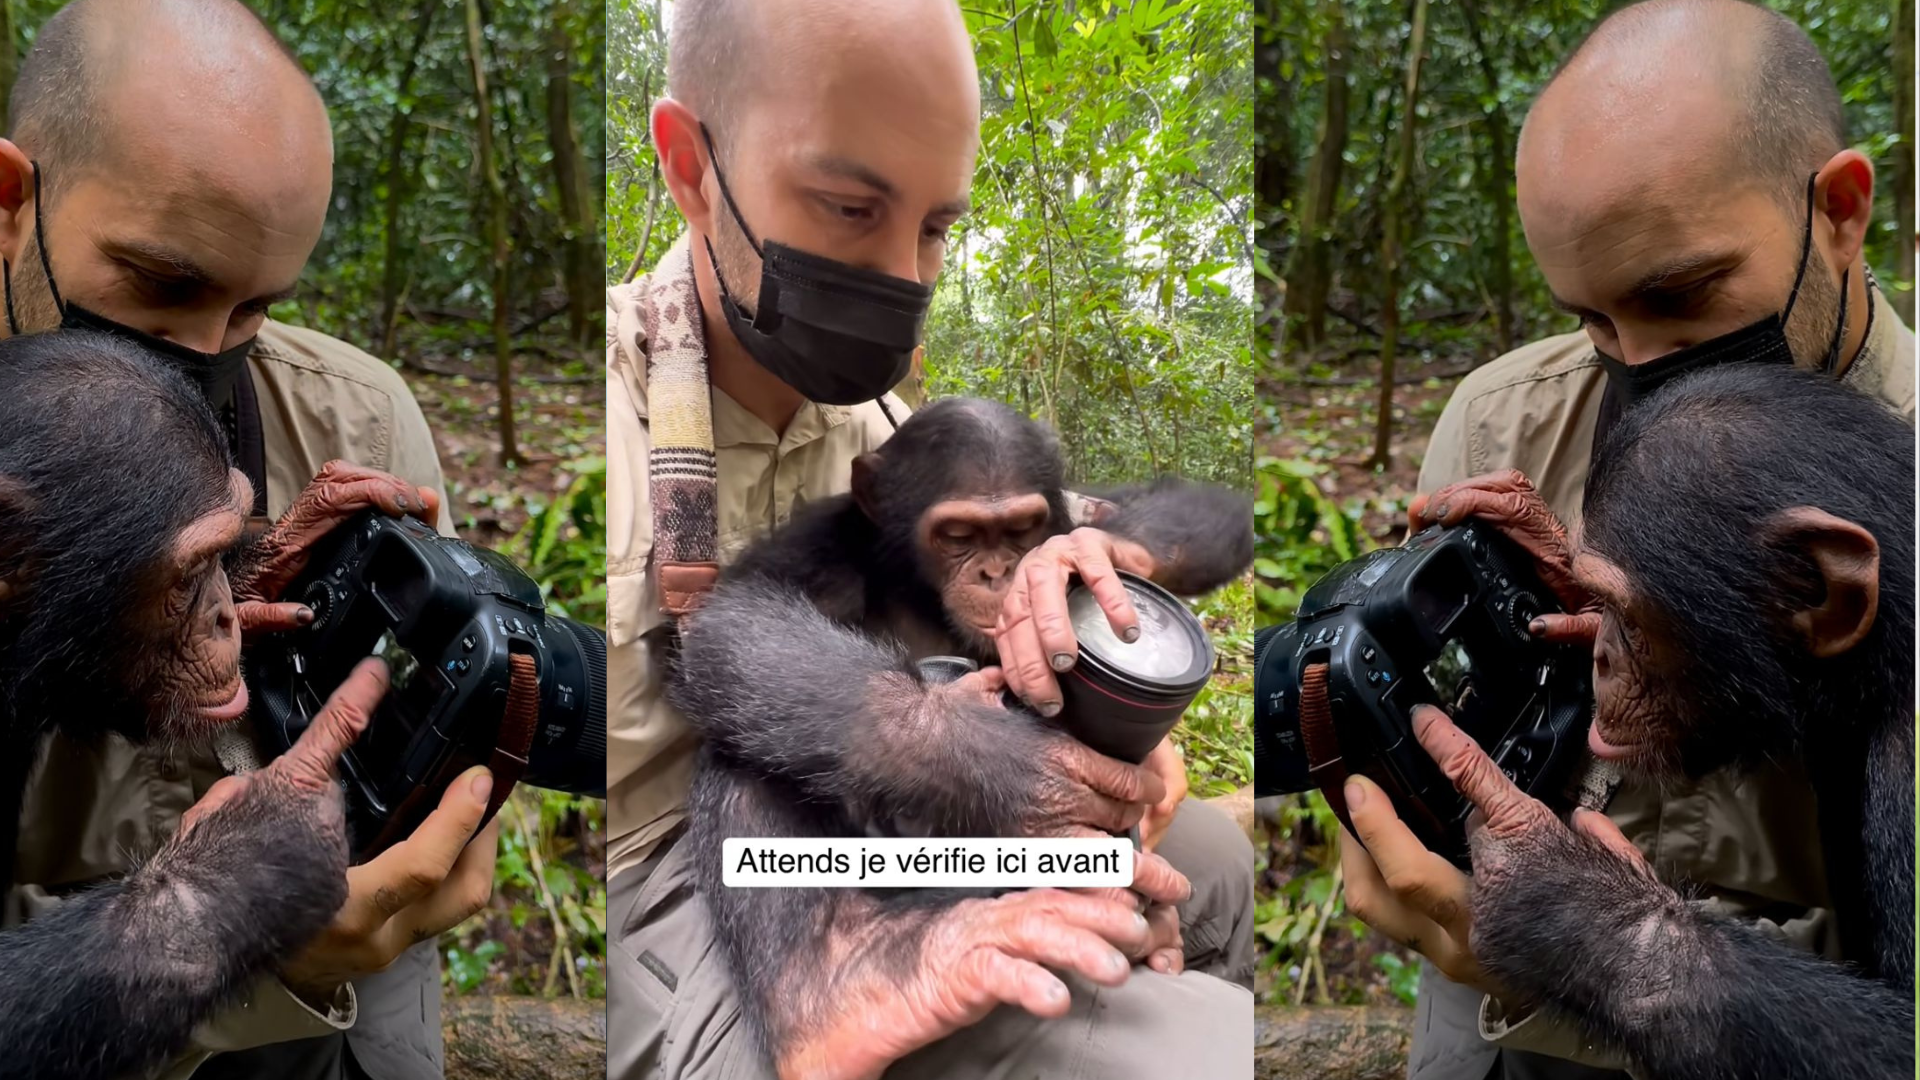 En los videos se observa al fotógrafo y el chimpancé disfrutando de un momento único desde el respeto a la forma de vivir de cada uno. Foto: capturas de pantalla video Instagram @jcpieri